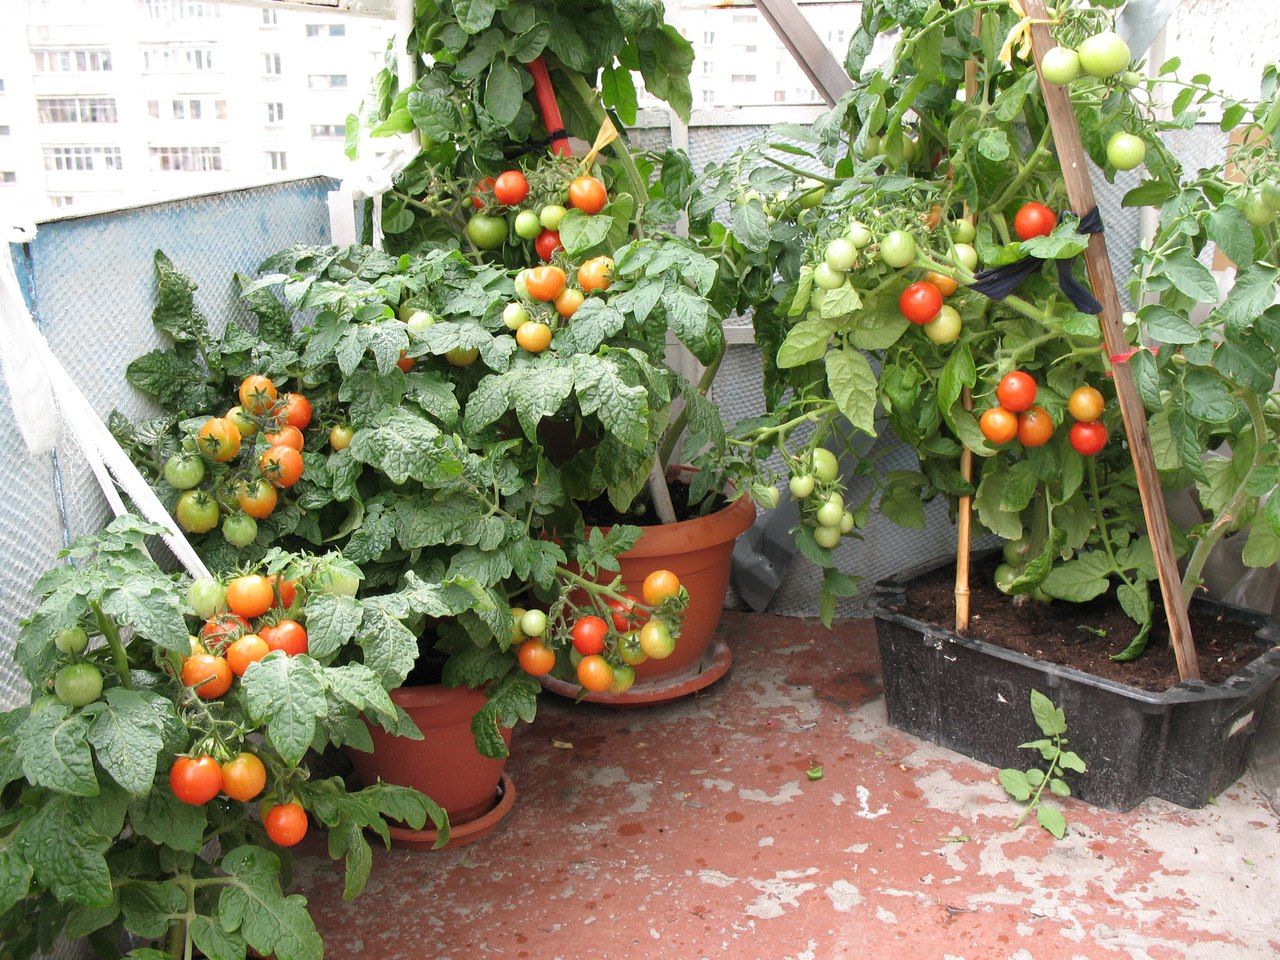 Пошаговая технология выращивания помидоров на балконе, лучшие сорта с описанием